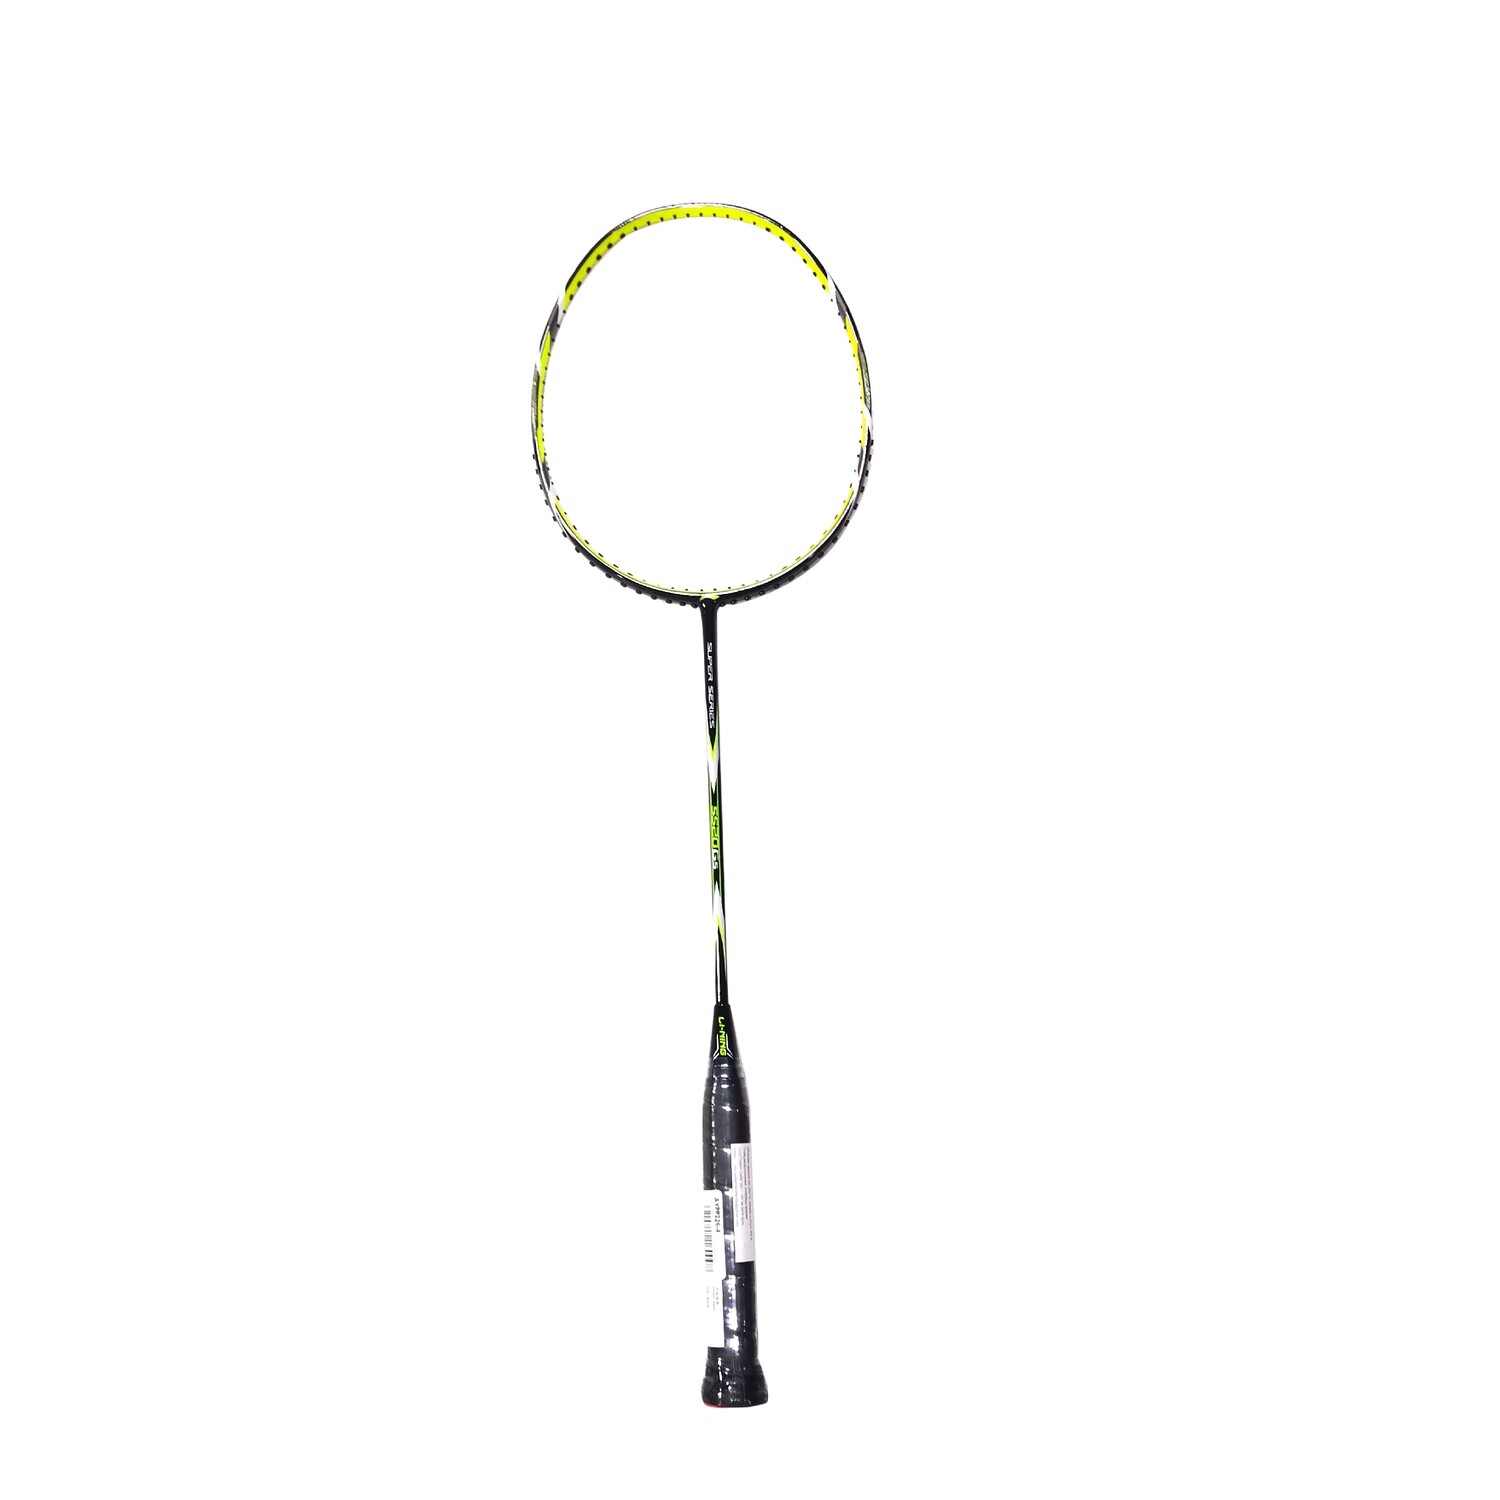 LI-NING Super Series SS20 G5 Badminton Racquet